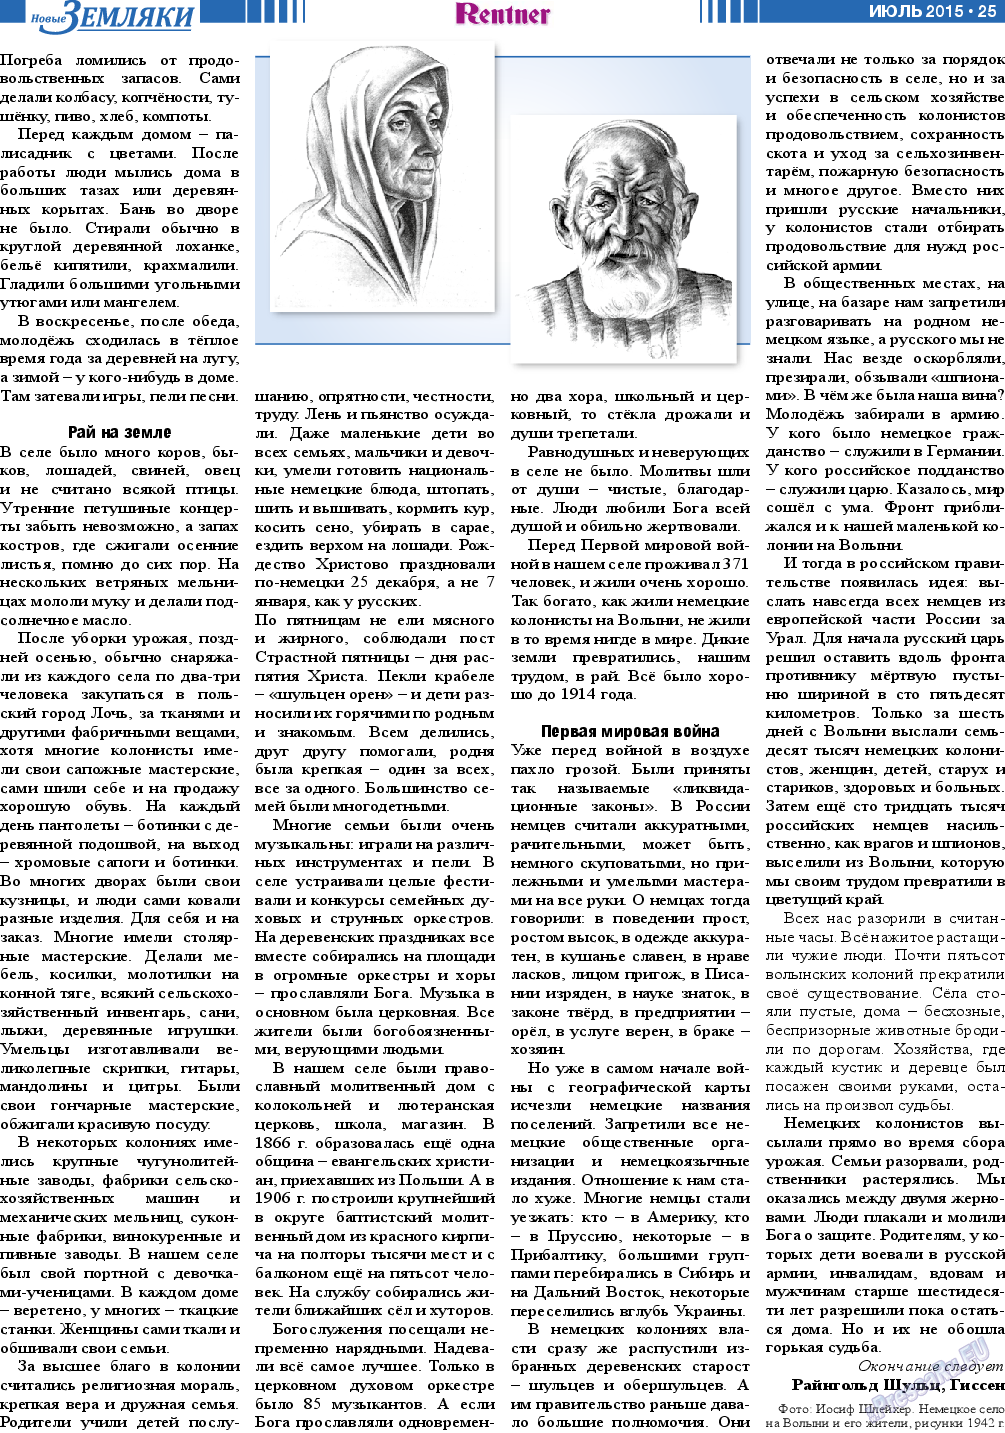 Новые Земляки, газета. 2015 №7 стр.25